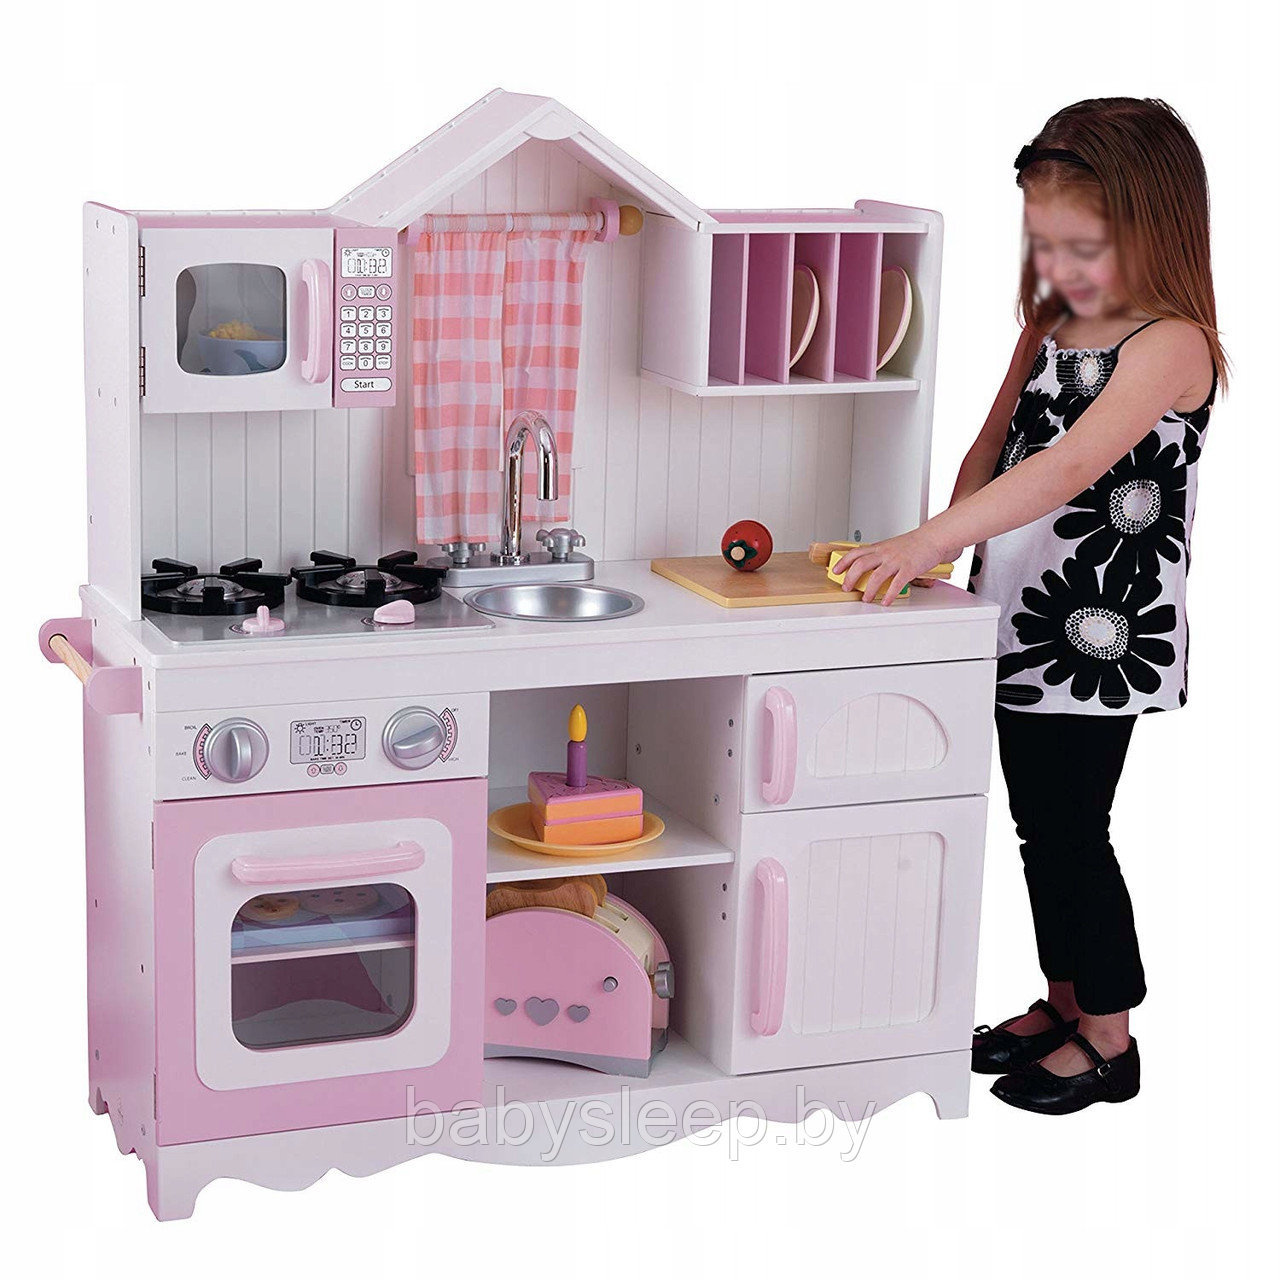 Интерактивная детская кухня Kidkraft 53222, фото 1